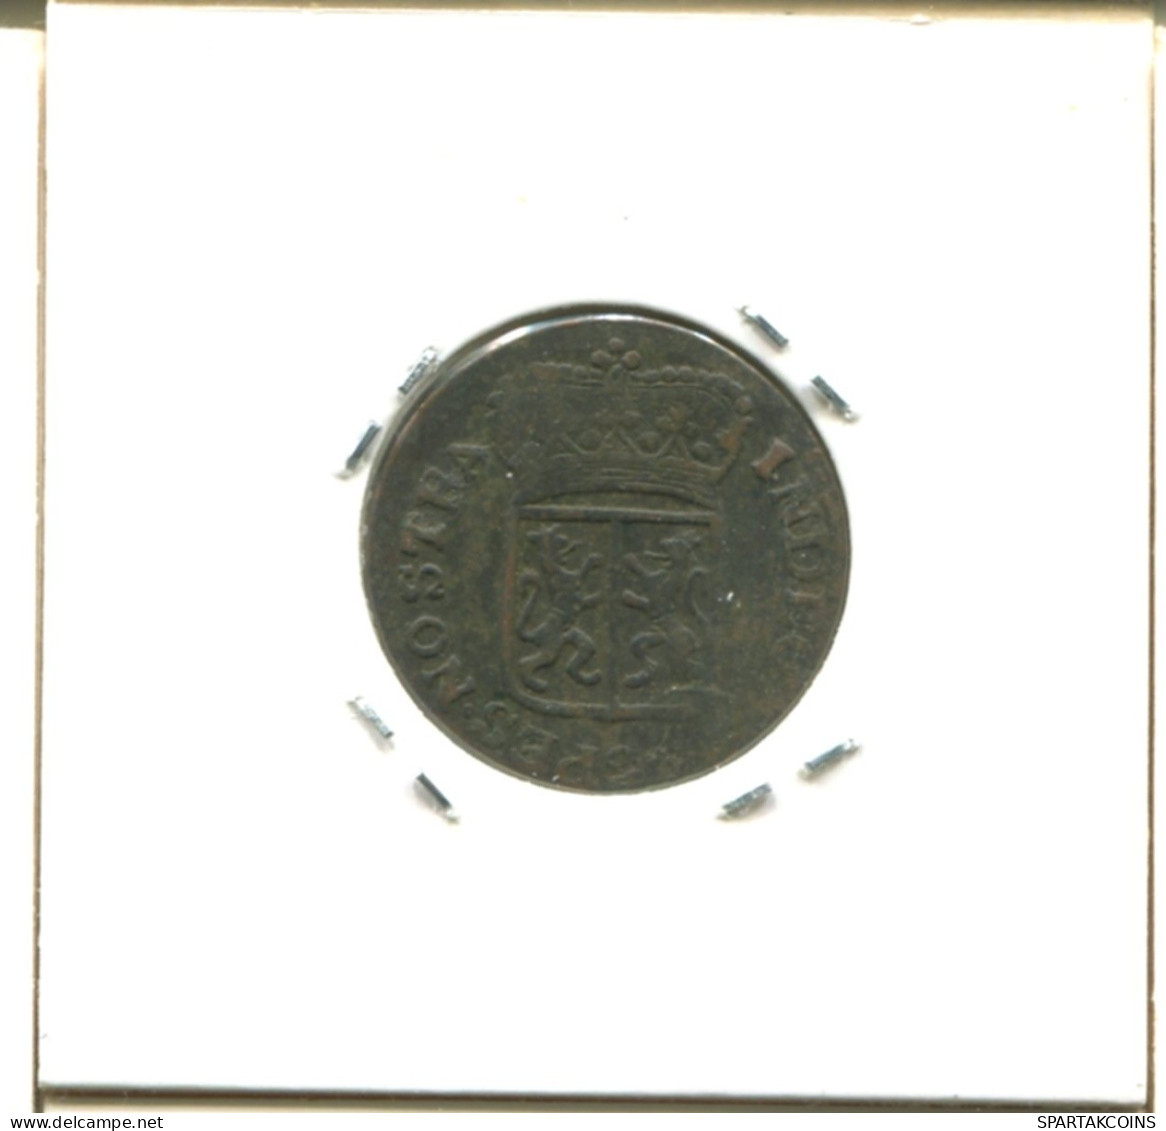 1790 GELDERLAND VOC DUIT NIEDERLANDE OSTINDIEN NY COLONIAL PENNY #E16884.8.D.A - Nederlands-Indië